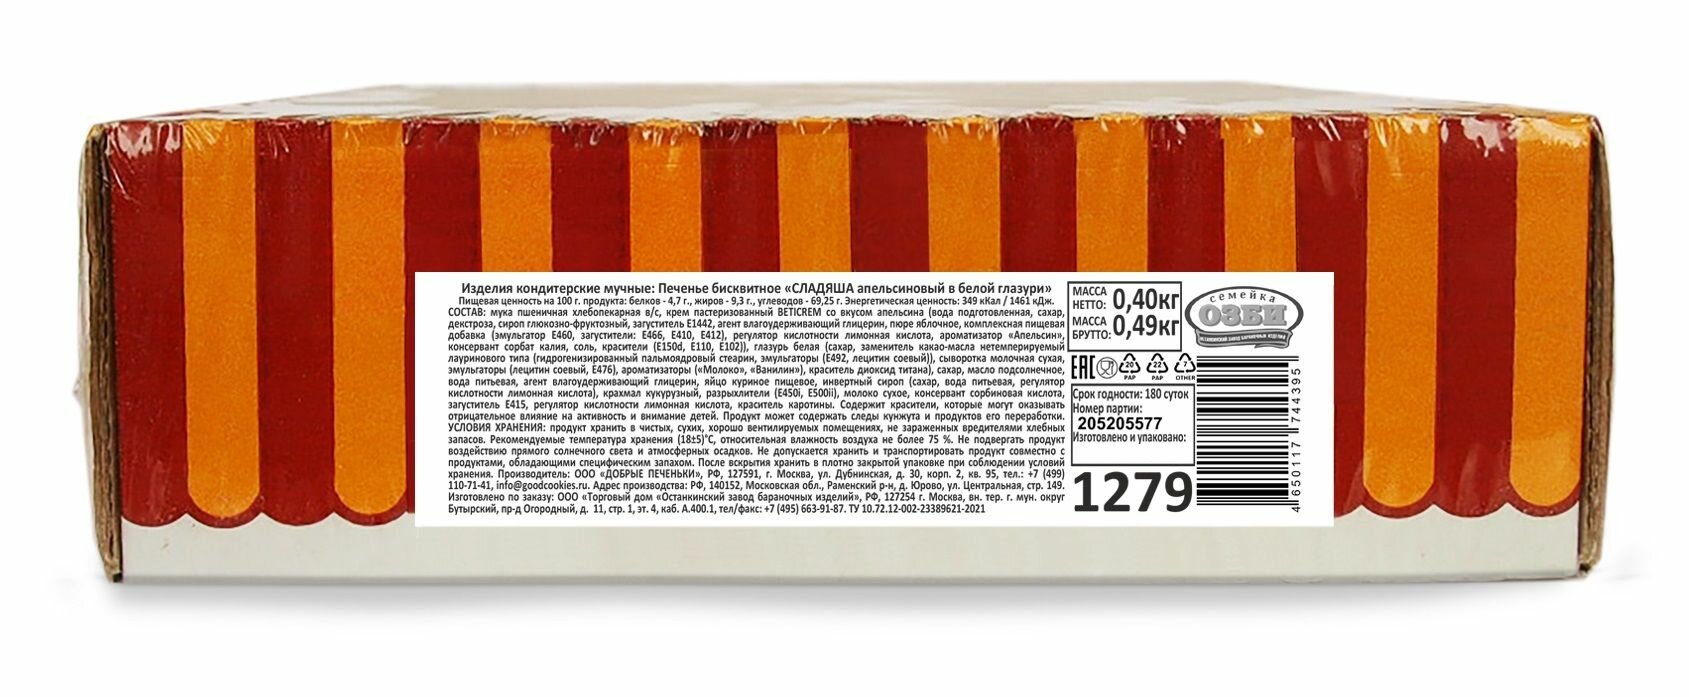 Печенье бисквитное Сладяша апельсиновый в белой глазури "Семейка озби", 400 г